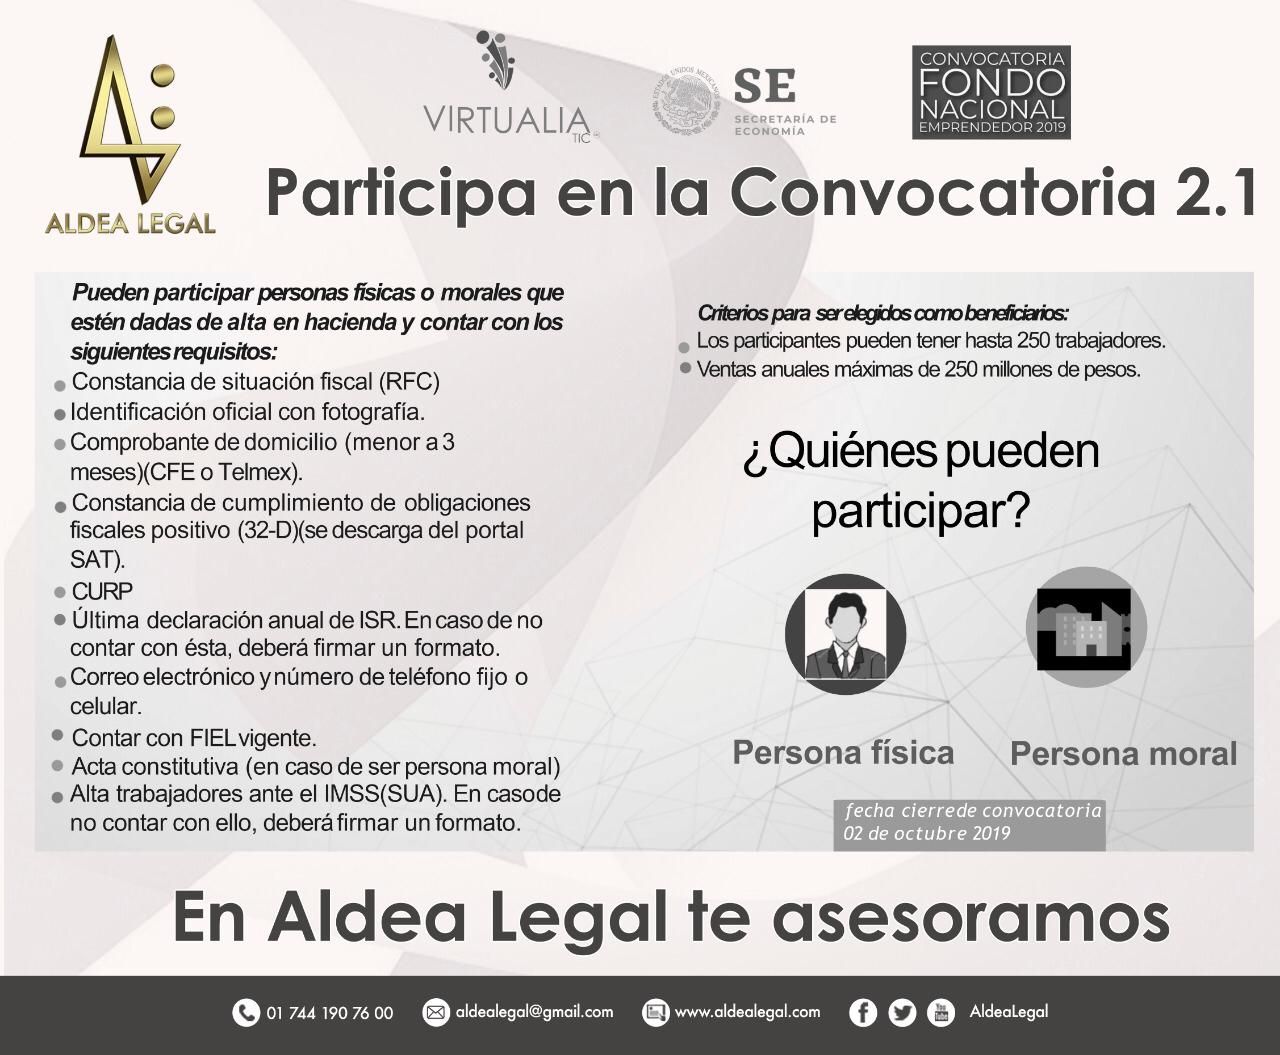 Aldea Legal te asesora; participa en la convocatoria para el Fondo Nacional del Emprendedor 2019 